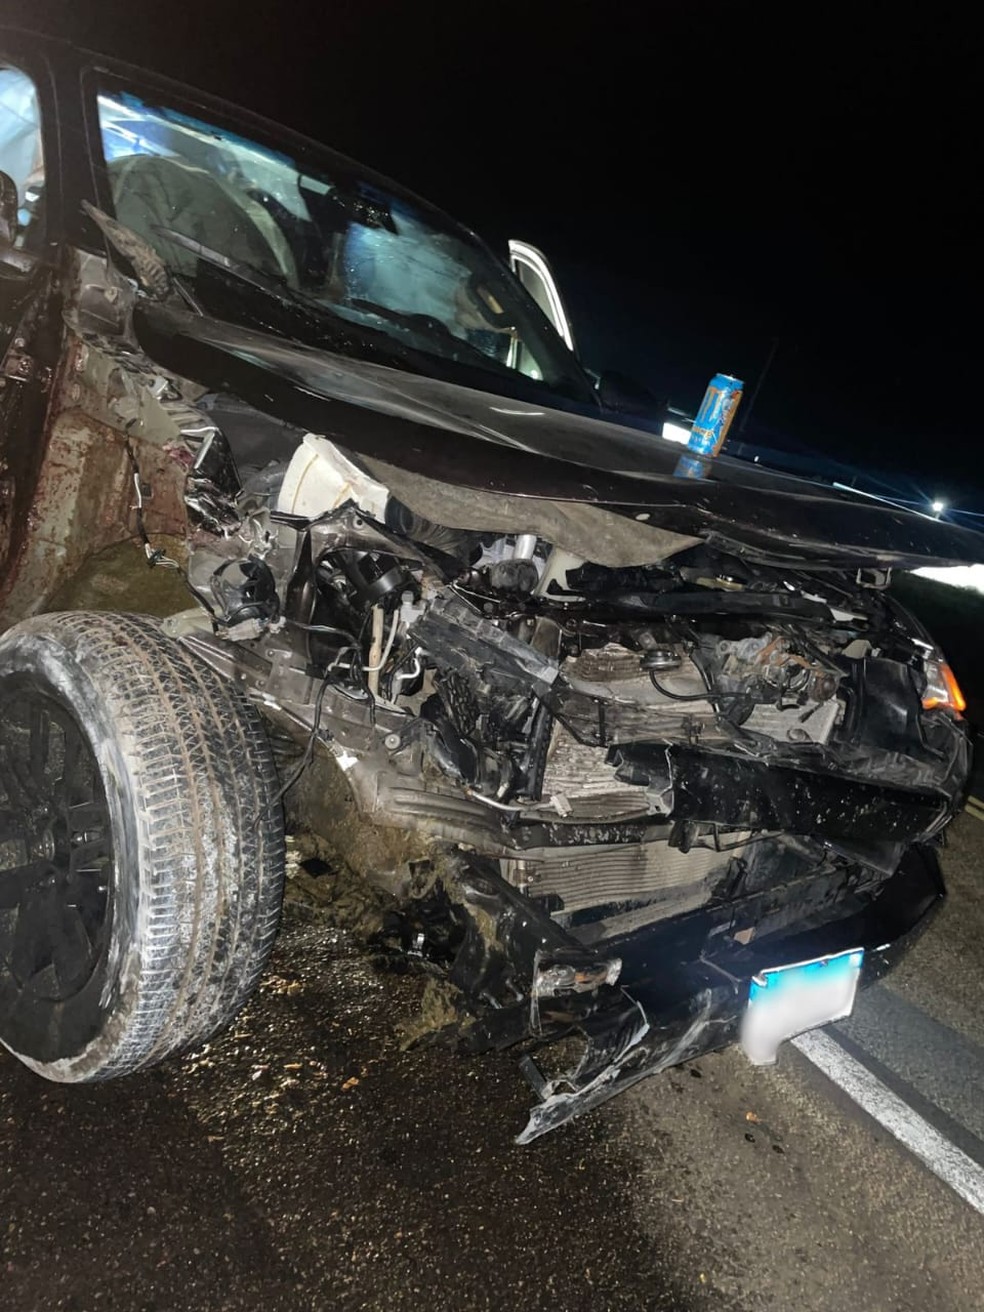 Carro usado por deputado federal após colisão com animal na BR-304, no RN — Foto: Cedida